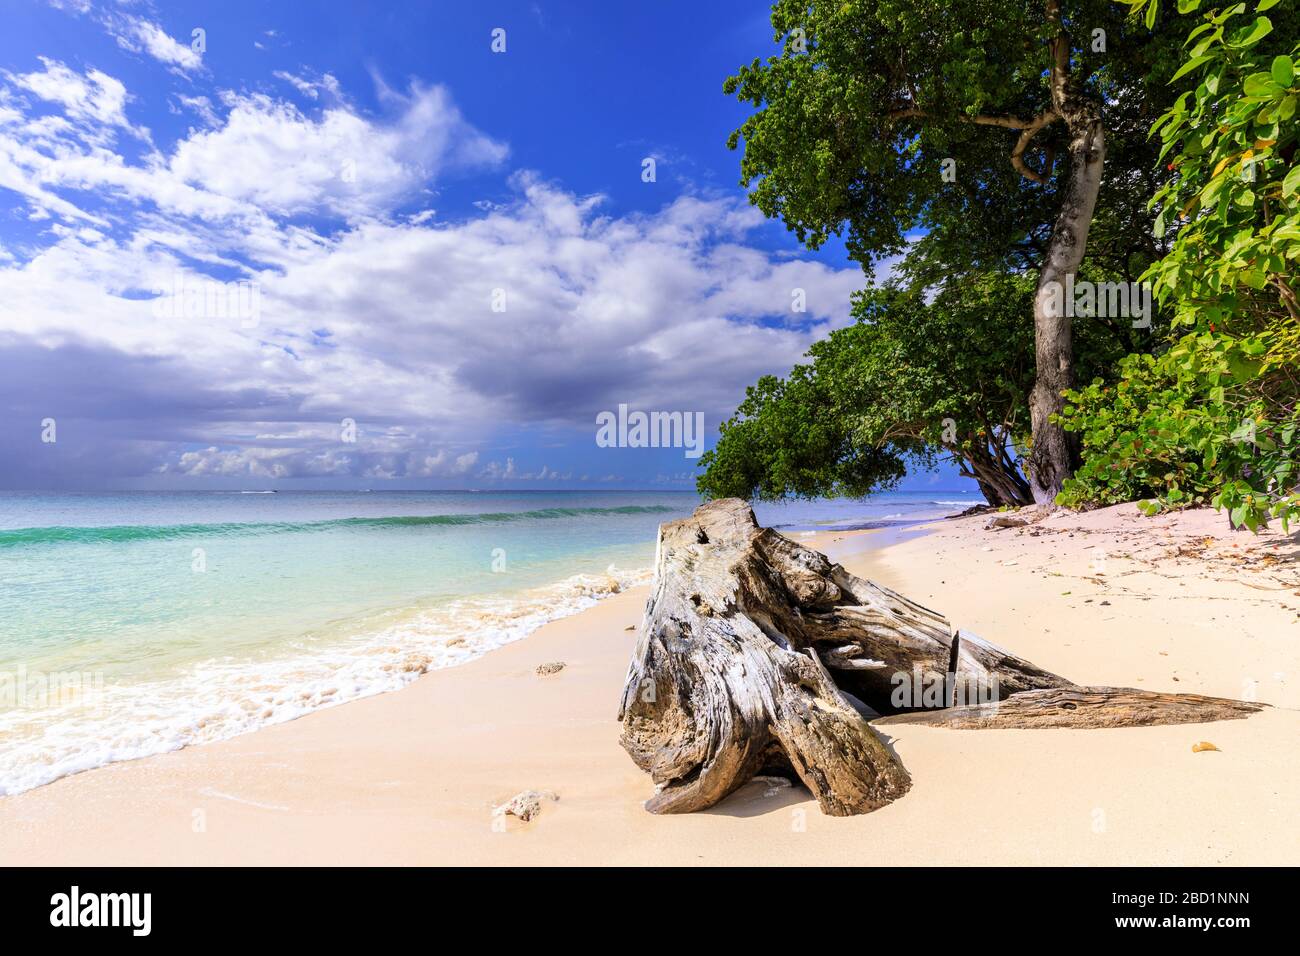 Baie de Paynes, arbres suspendus, plage de sable fin rose pâle, mer turquoise, belle côte ouest, Barbade, îles Windward, Caraïbes Banque D'Images